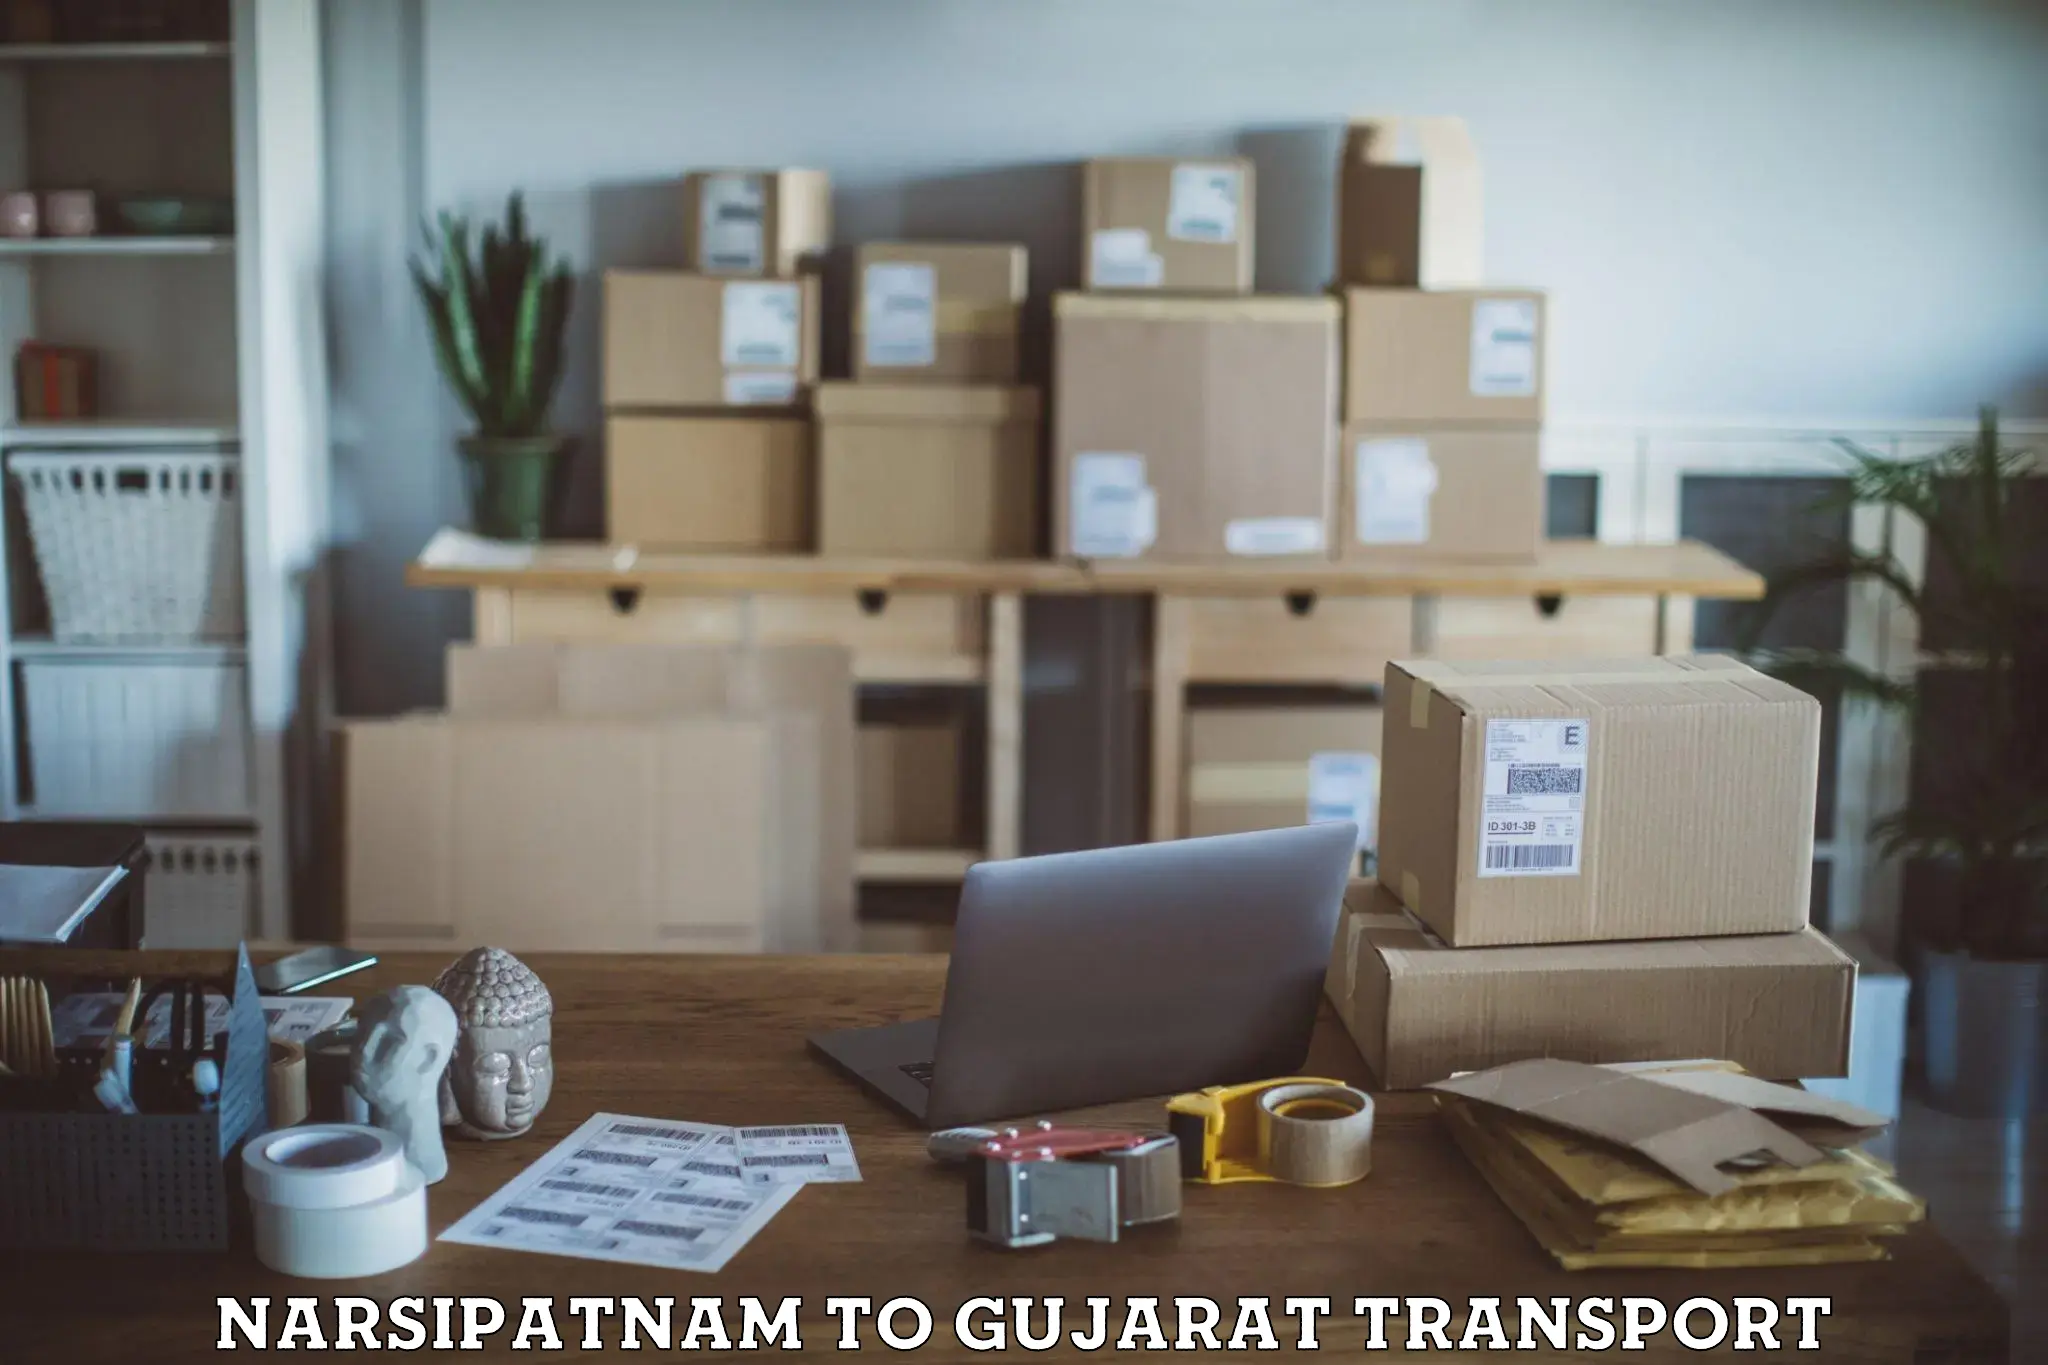 Furniture transport service Narsipatnam to Gujarat